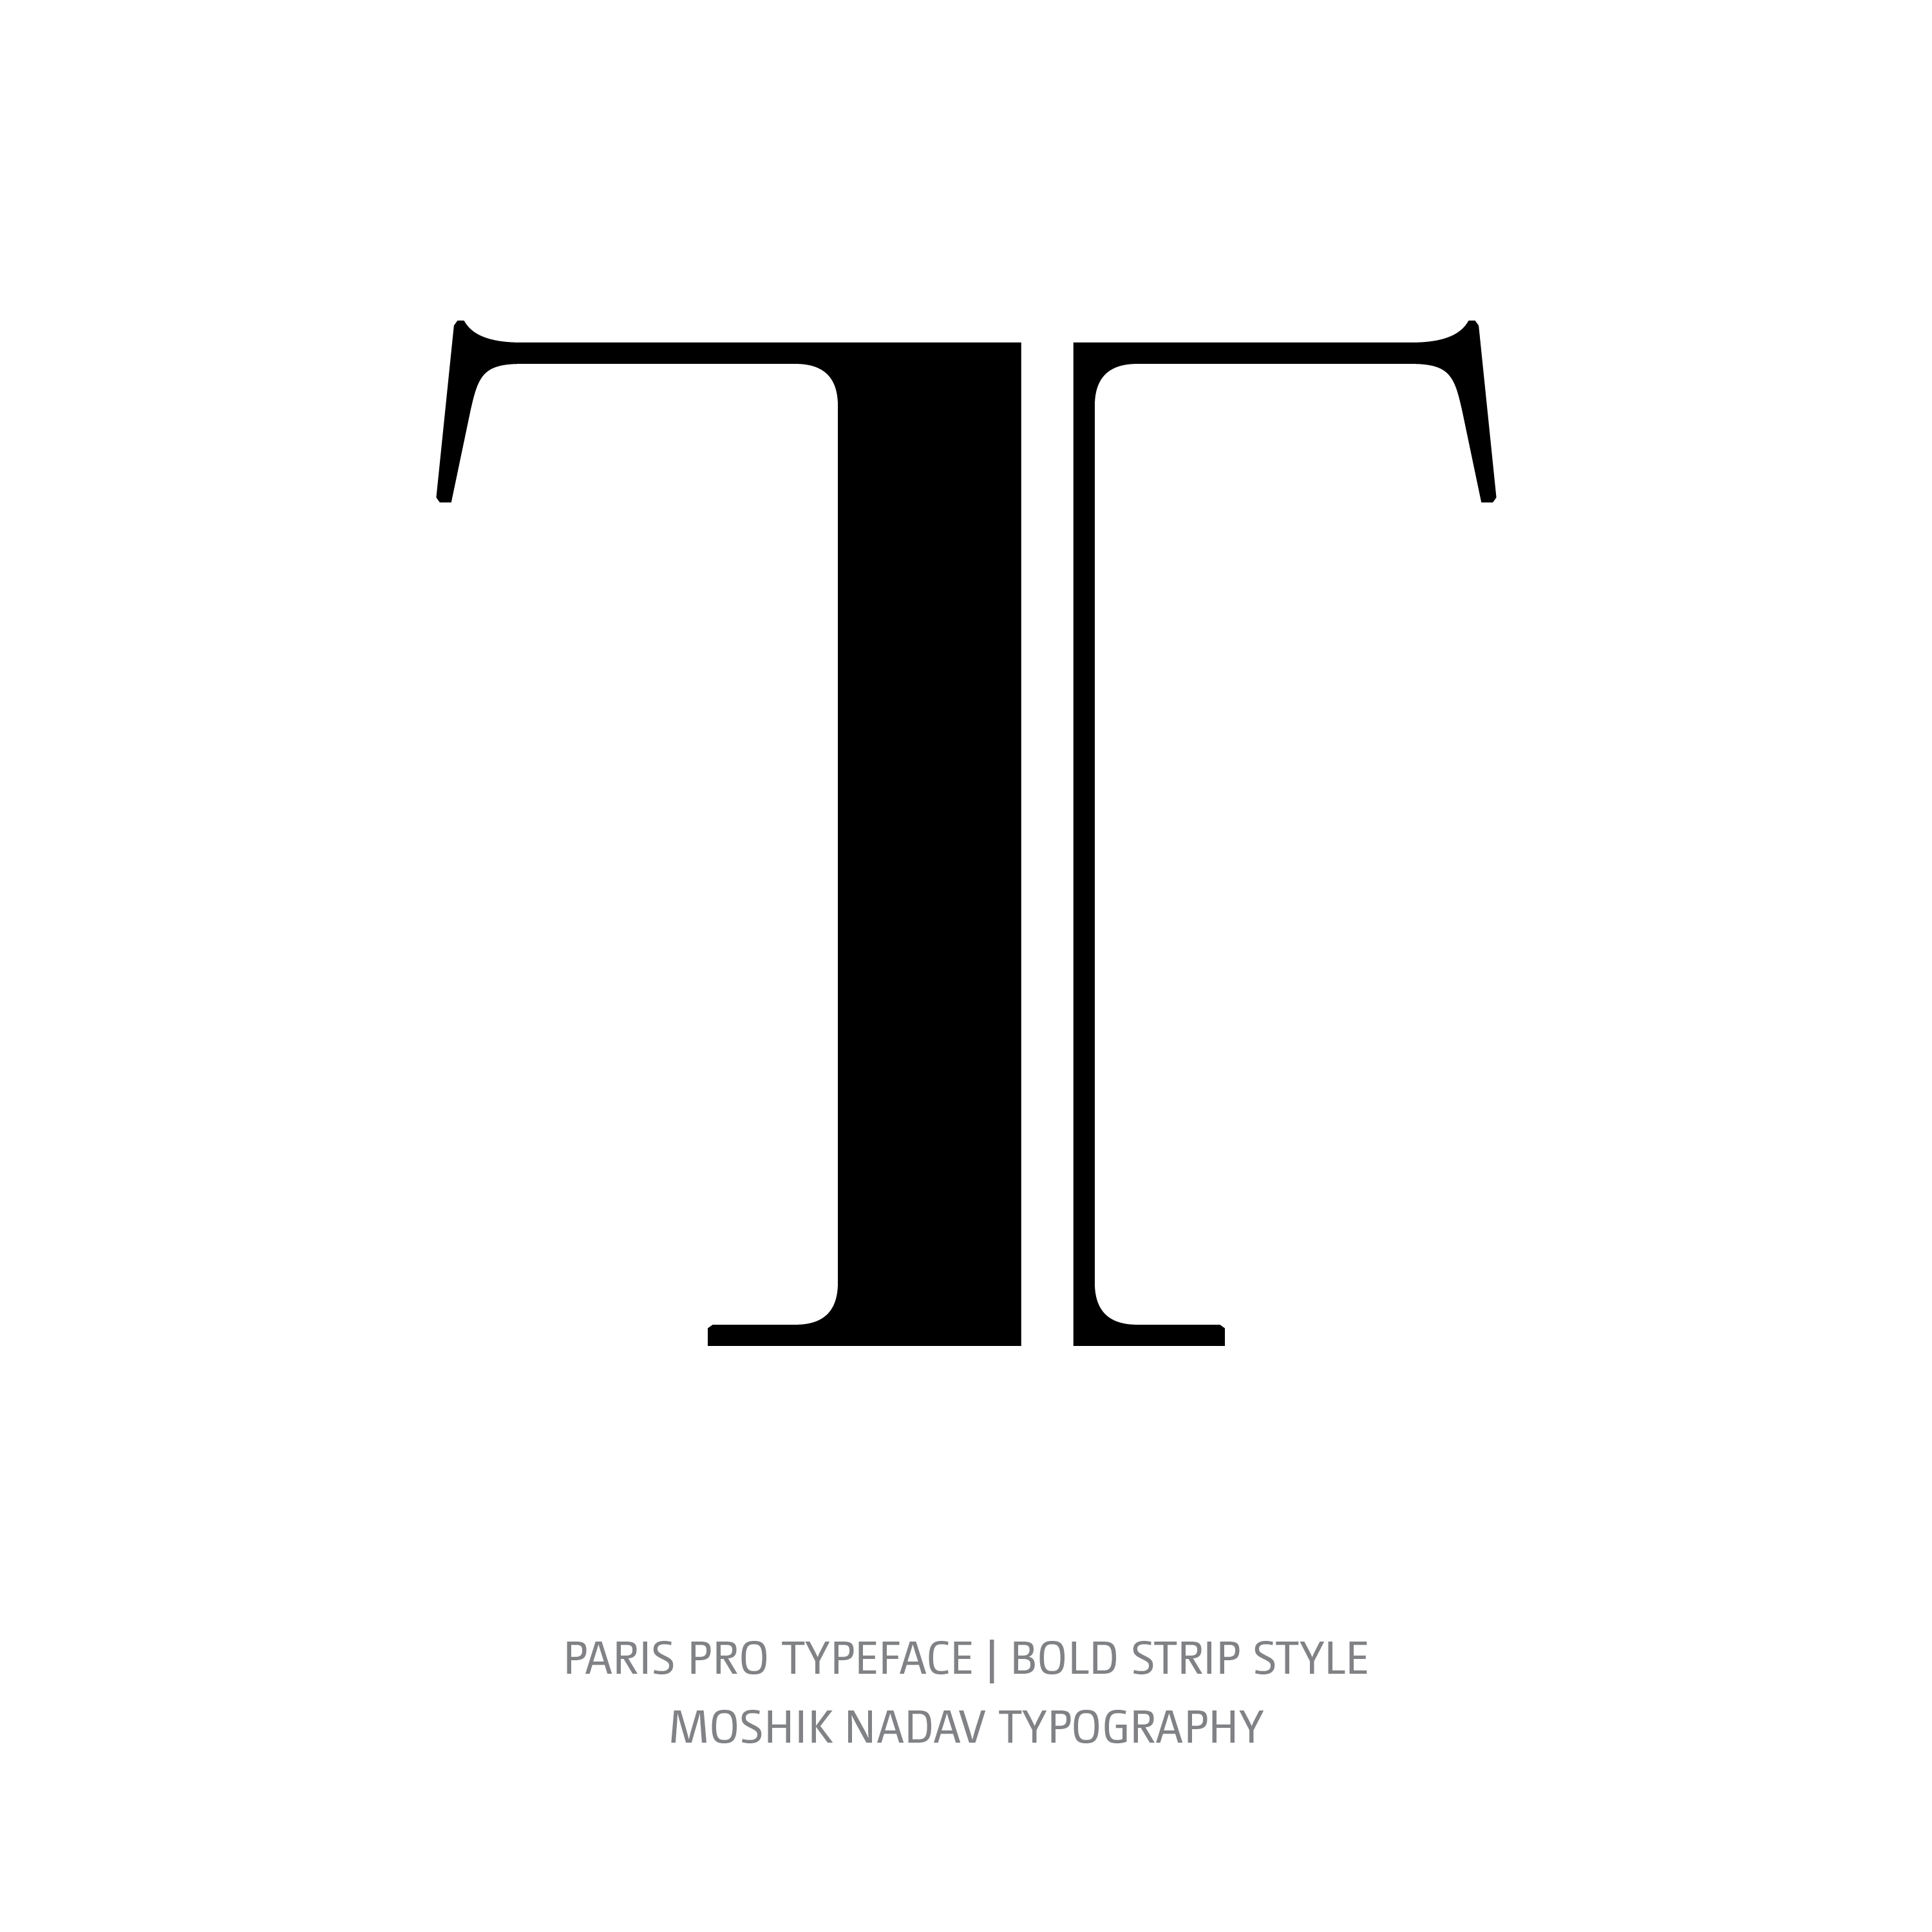 Paris Pro Typeface Bold Strip T